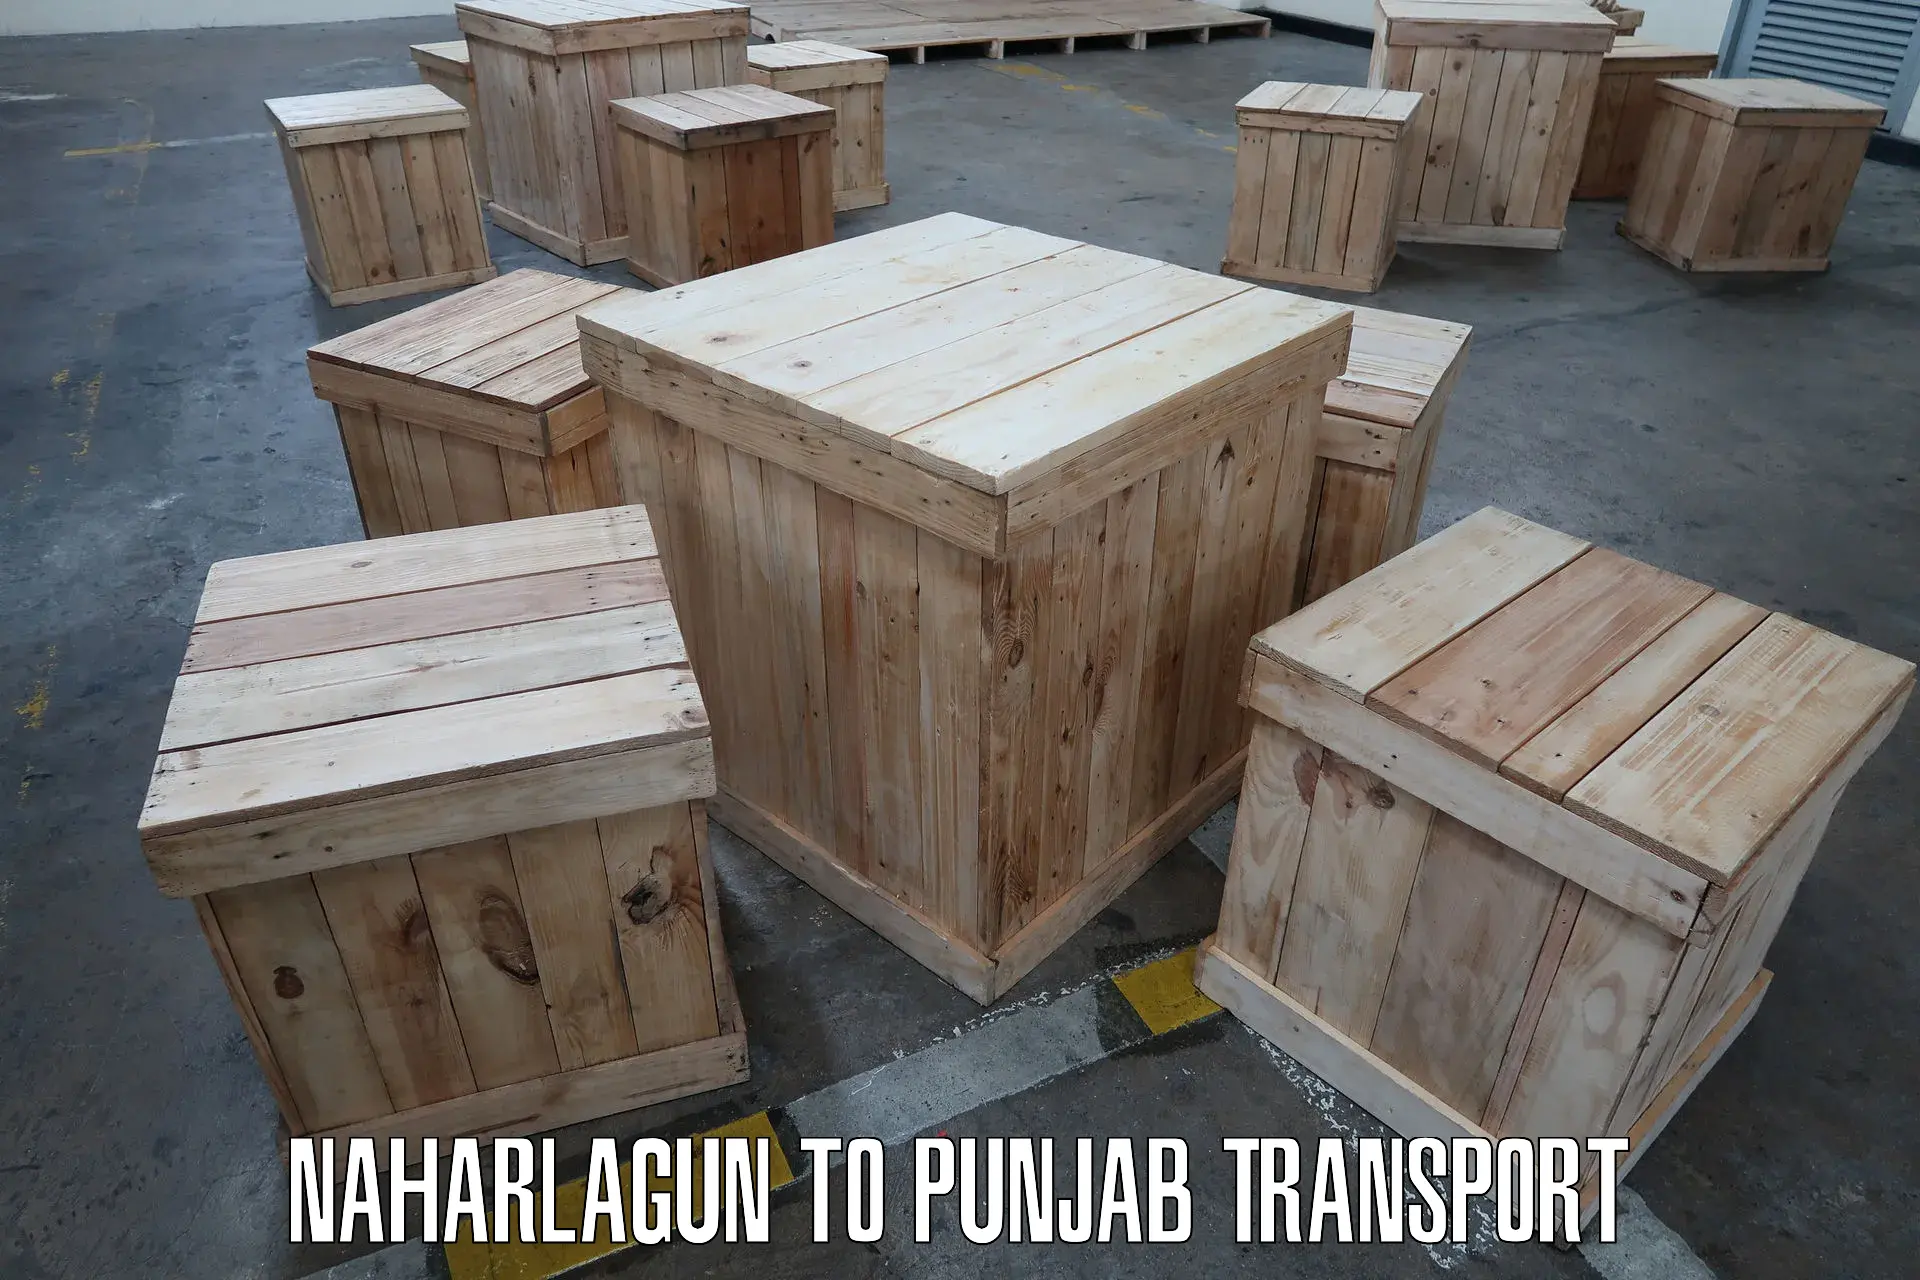 Vehicle transport services Naharlagun to Punjab